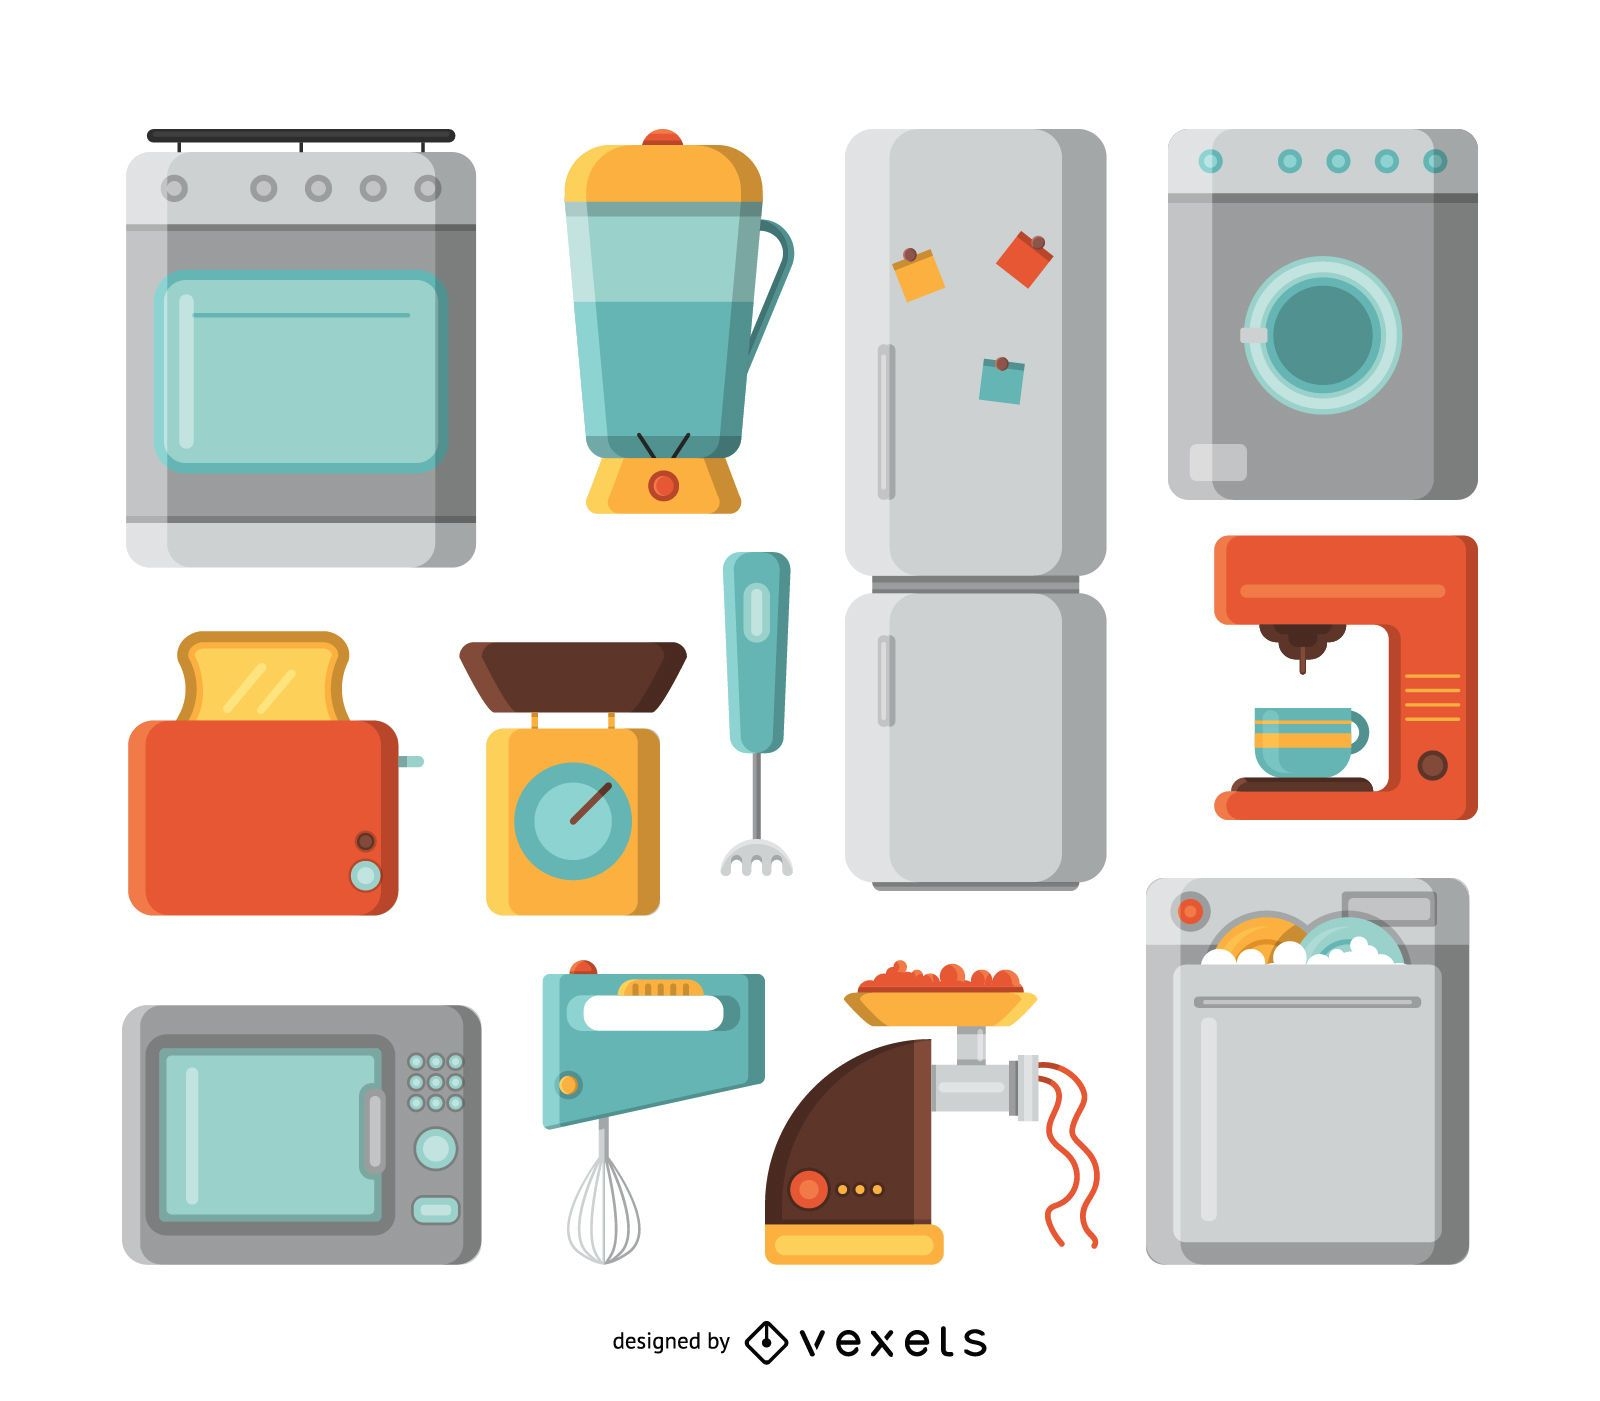 Illustrationsset für Küchengeräte